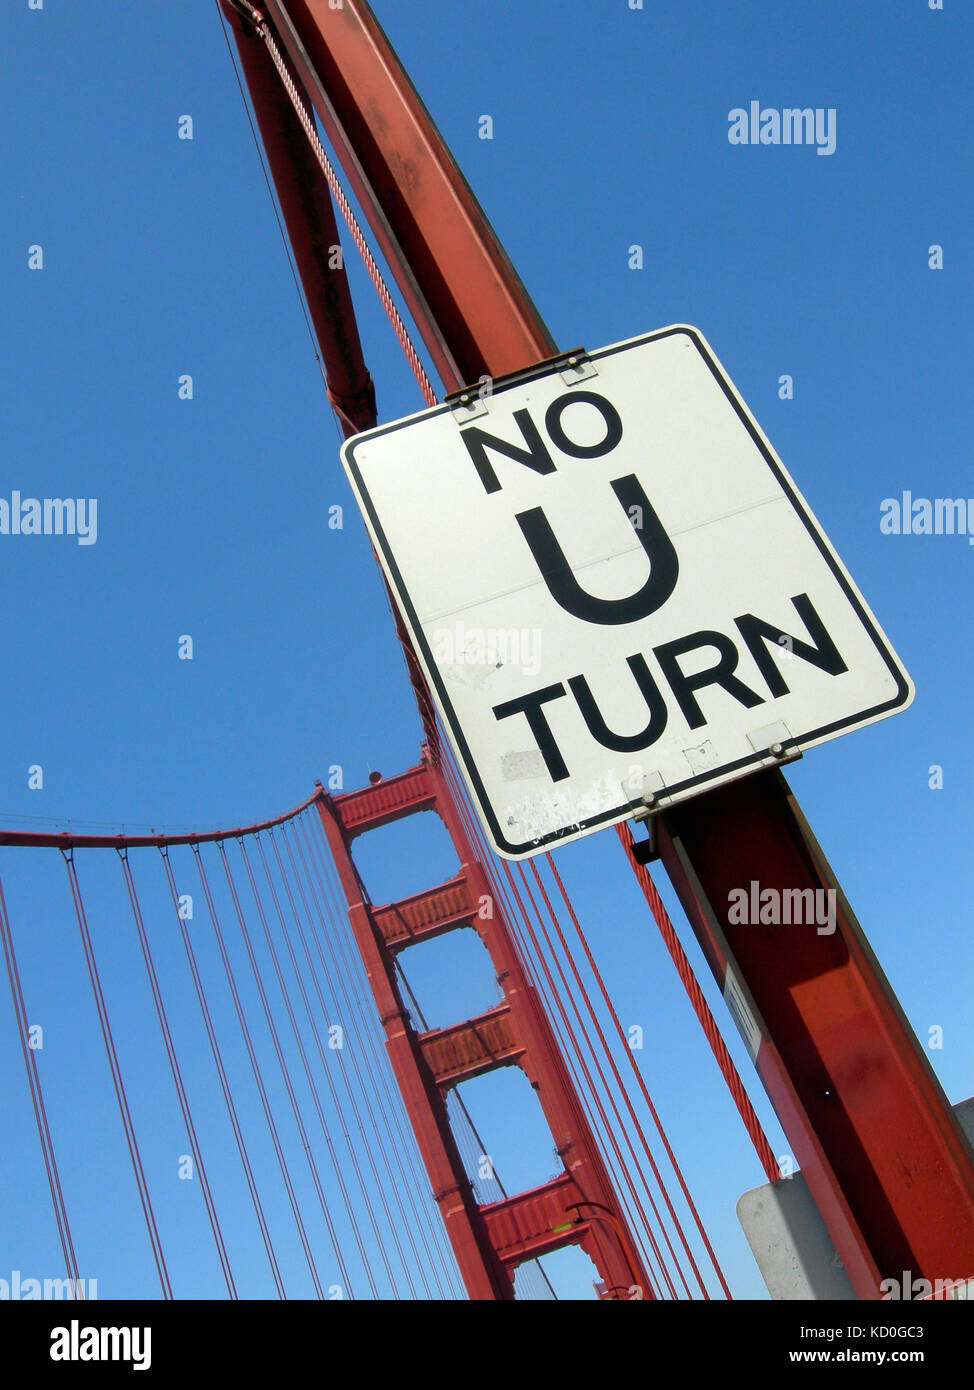 Kein u-turn Schild auf die berühmte Golden Gate Bridge in San Francisco mit blauen Himmel als Hintergrund, USA. Stockfoto